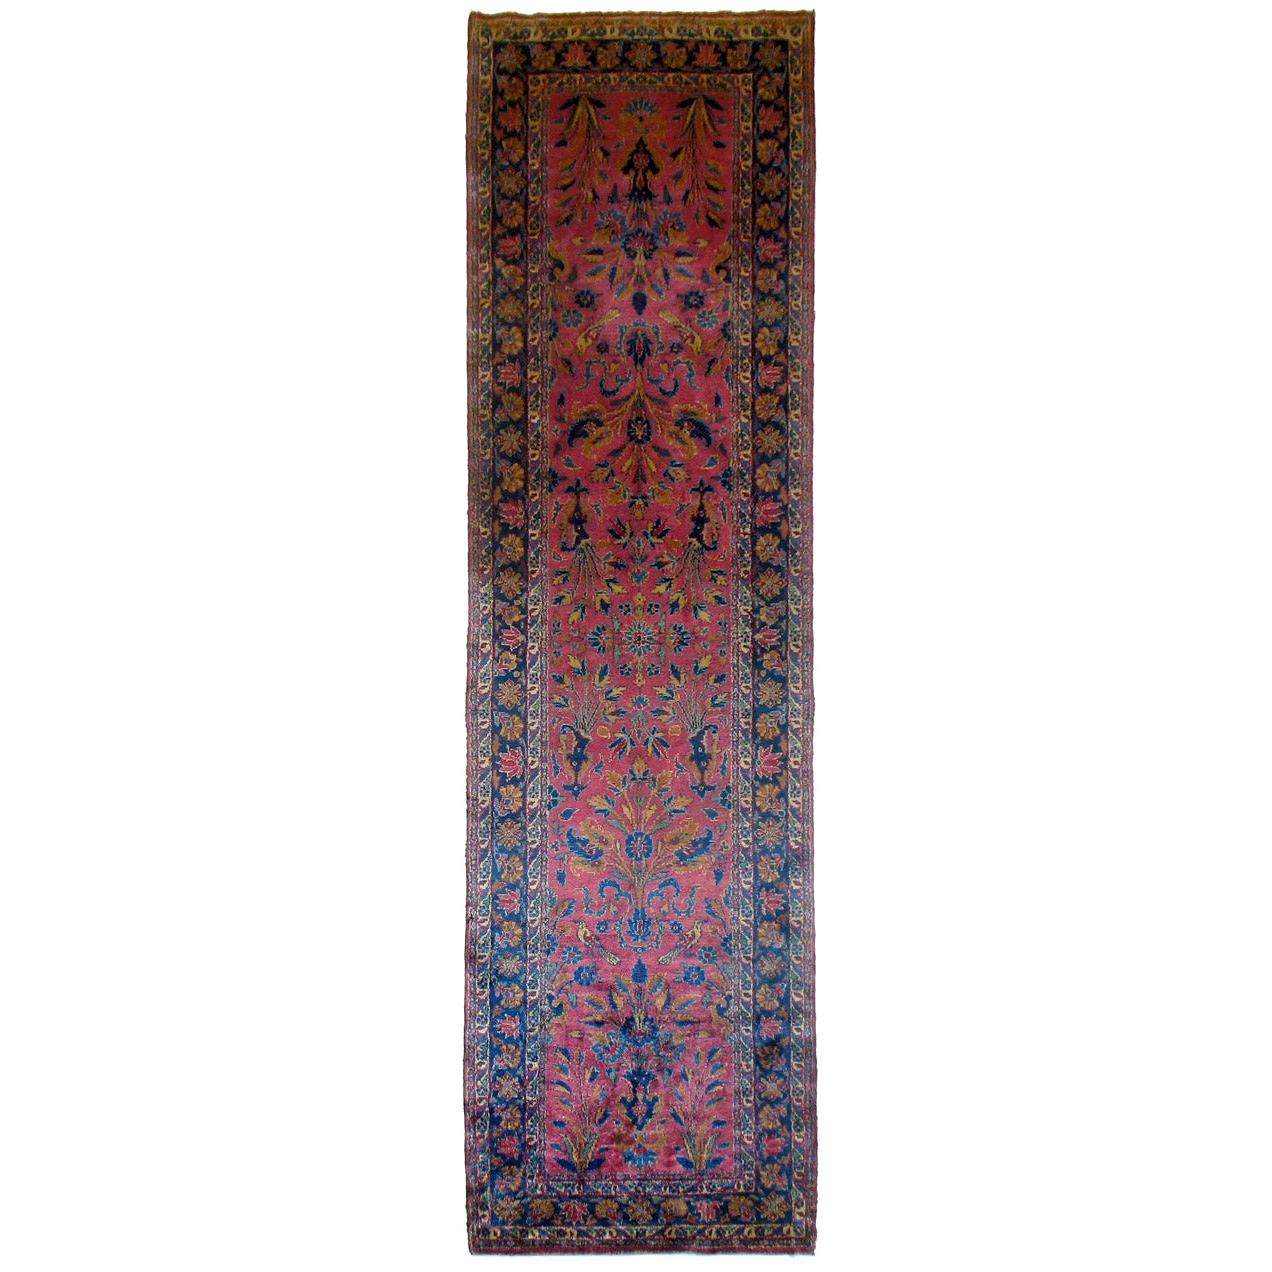 Prächtiger, prächtiger Kashan-Teppich aus feiner persischer Seide